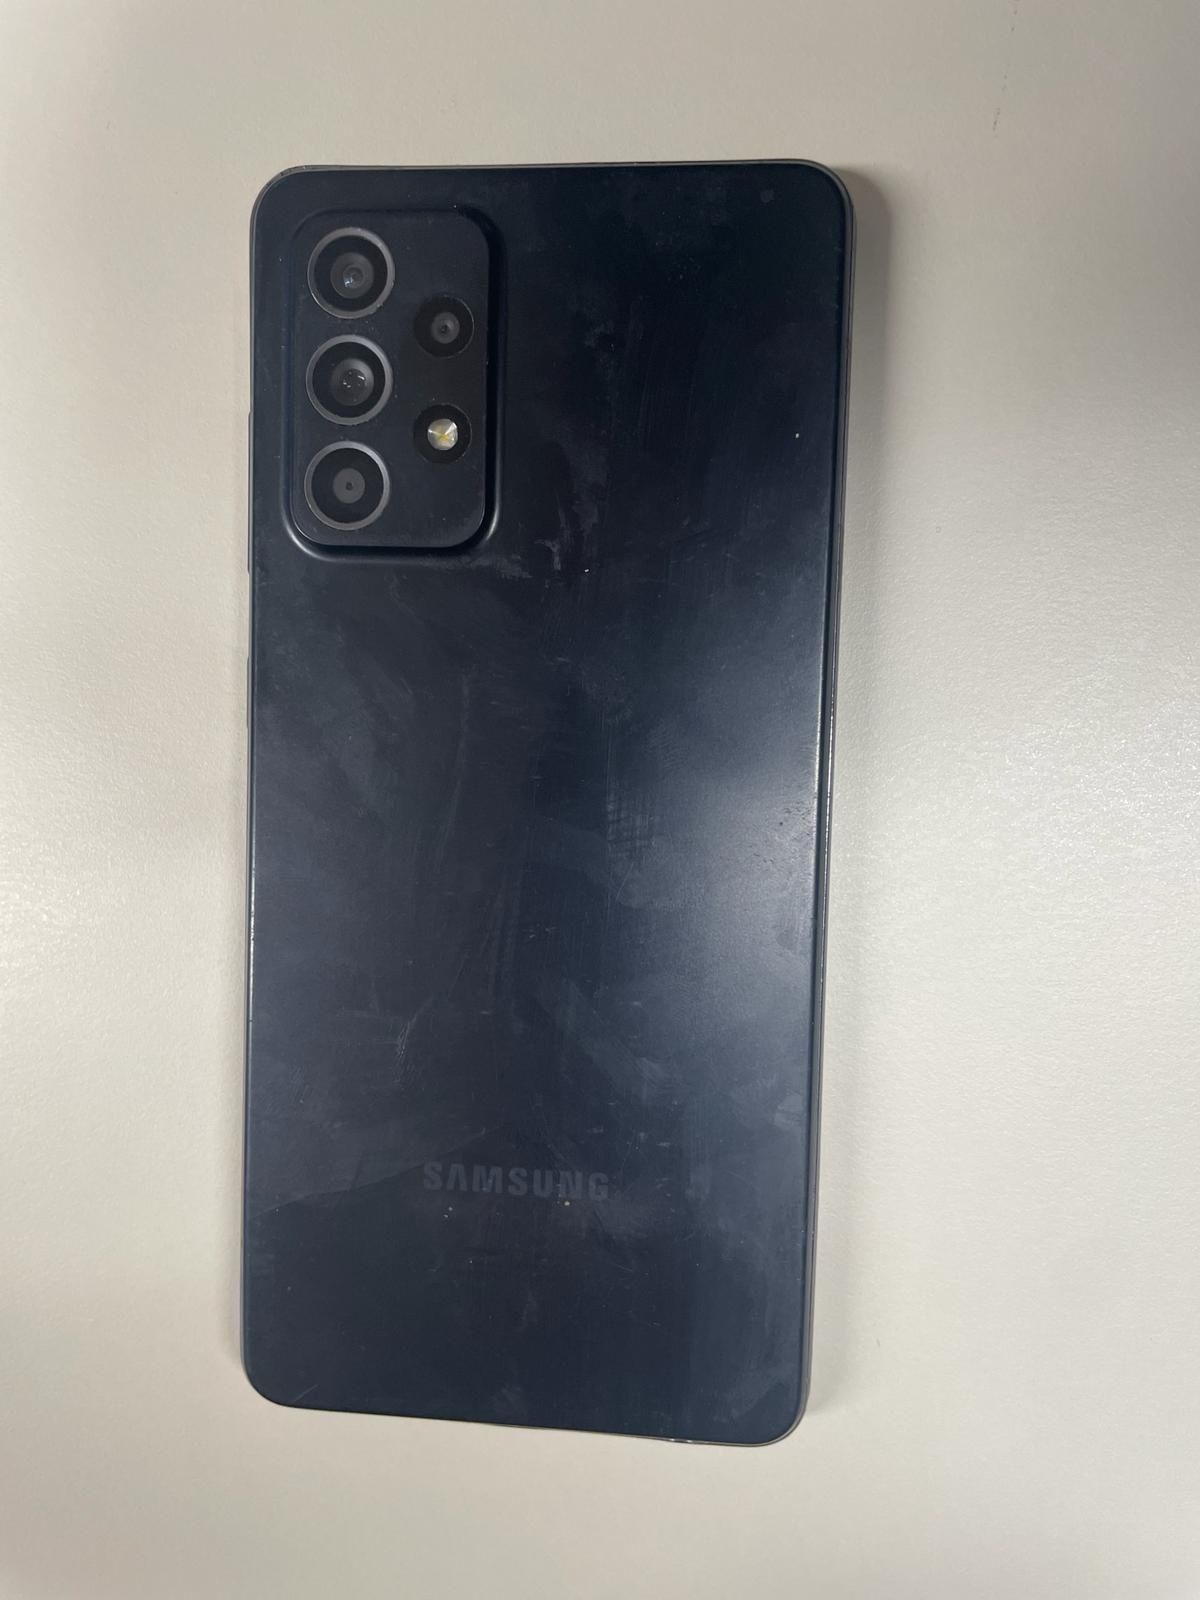 Samsung a52 preto com pelicula partida e vidro intacto